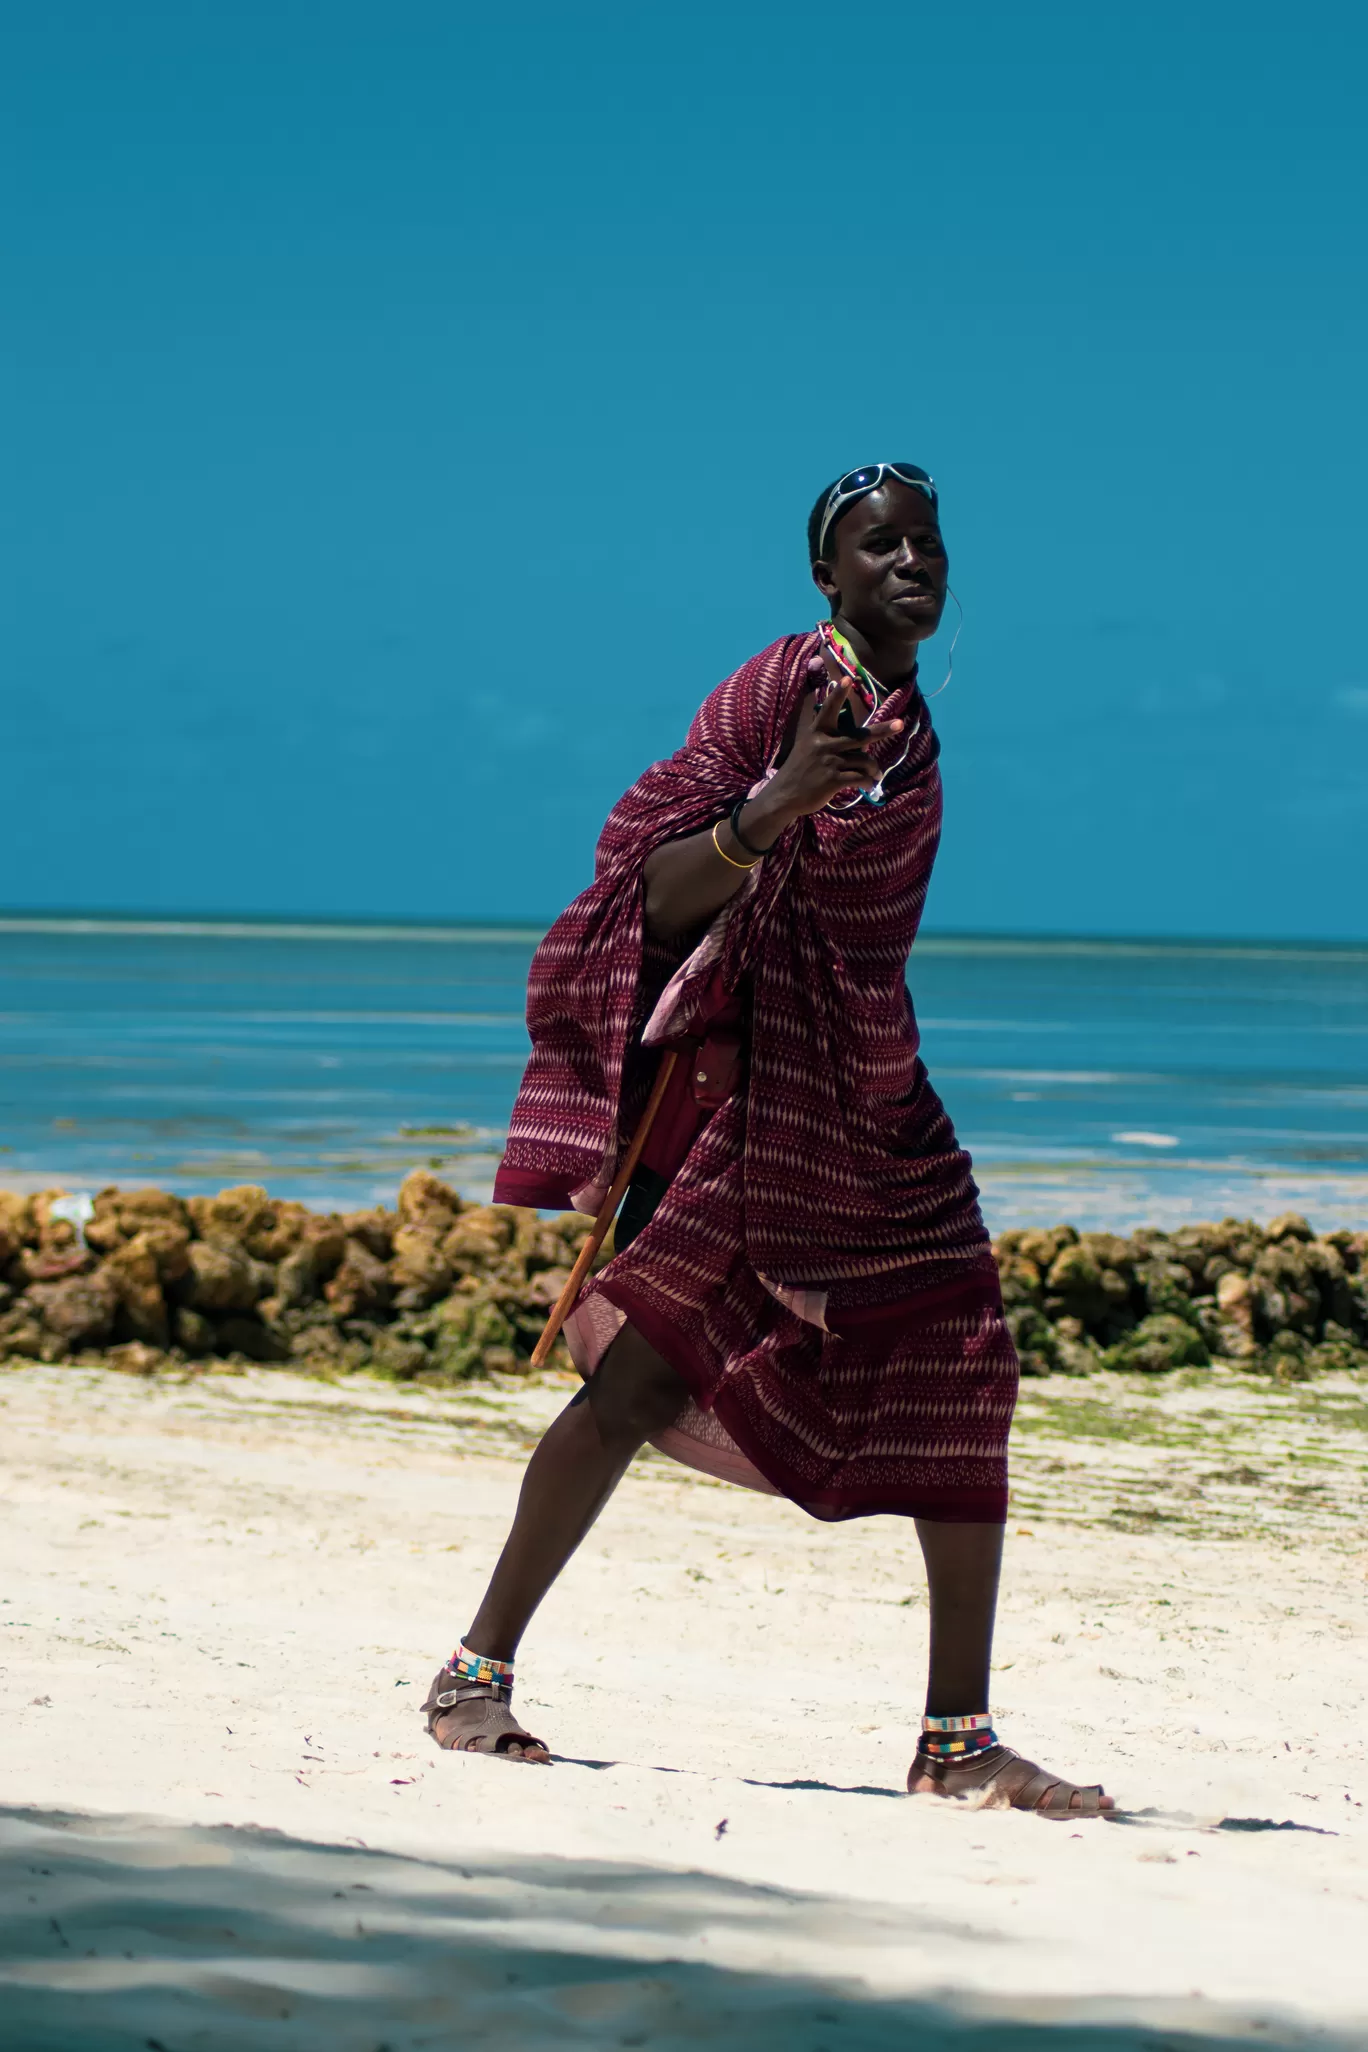 Photo of Zanzibar By abhinash singh